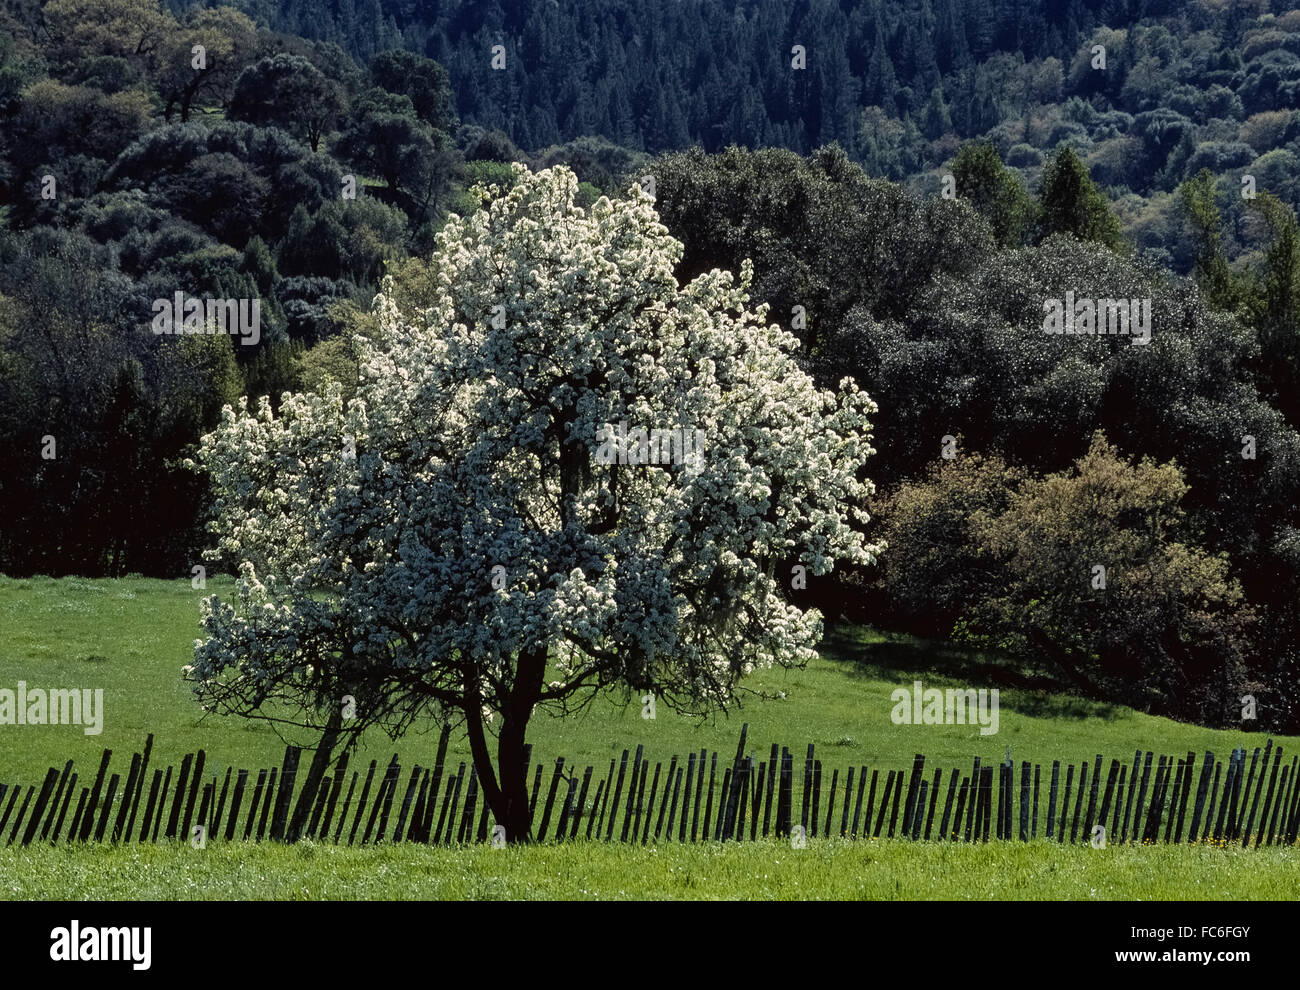 Un unico albero di mele (malus domestica) con la sua bella bianca fiorisce in primavera si distingue nel mondo rurale di Anderson Valley in Mendocino County, California del Nord, Stati Uniti d'America. Foto Stock